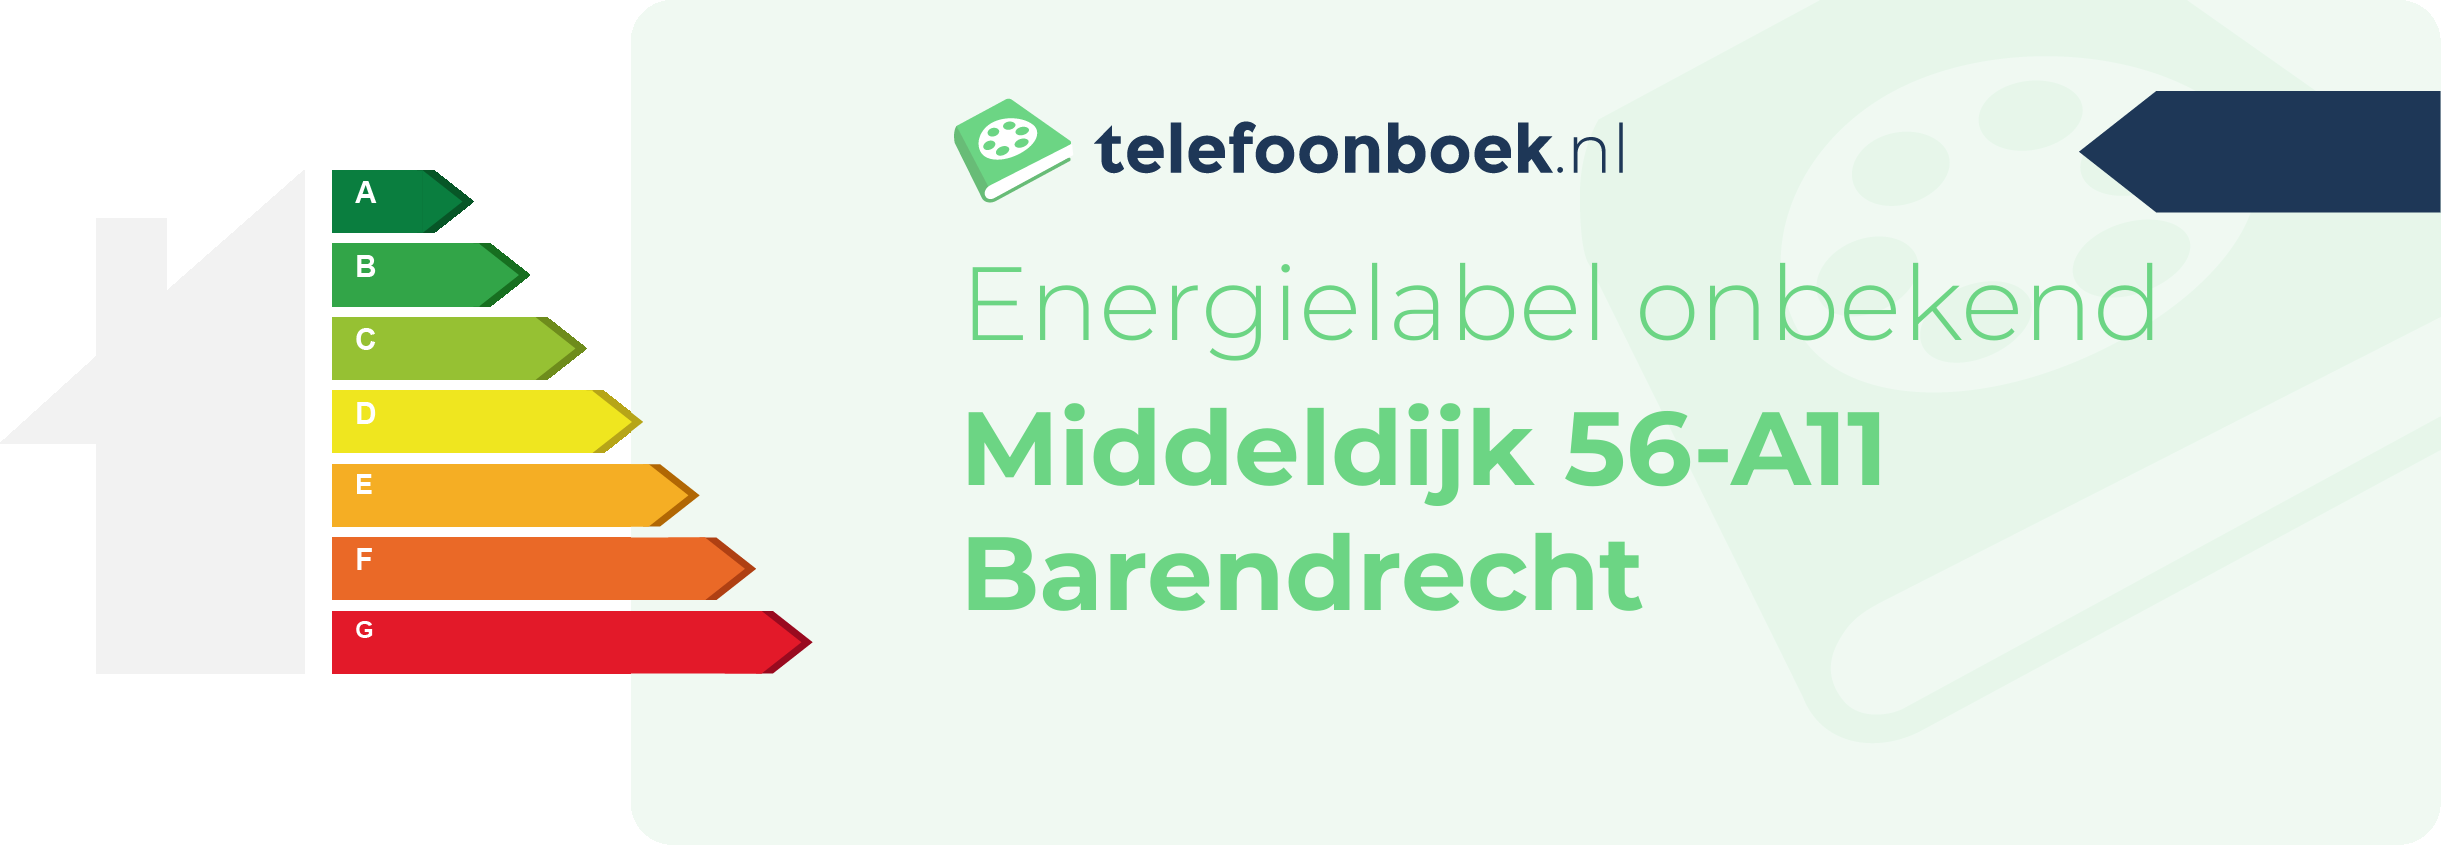 Energielabel Middeldijk 56-A11 Barendrecht